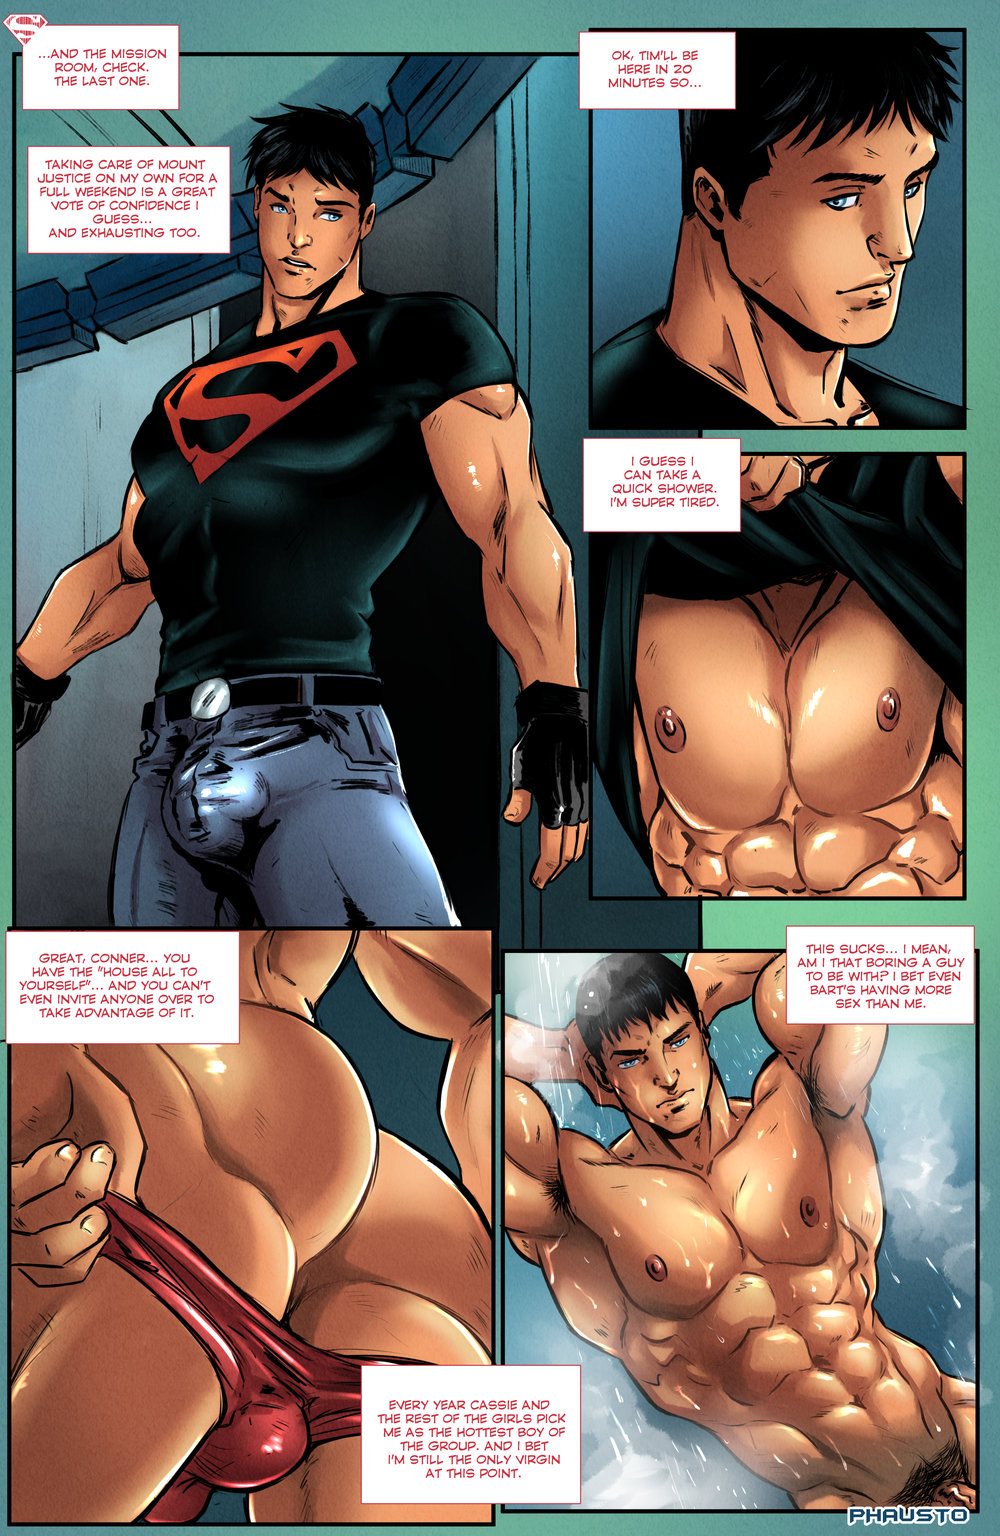 Hot gay porn superboy comics